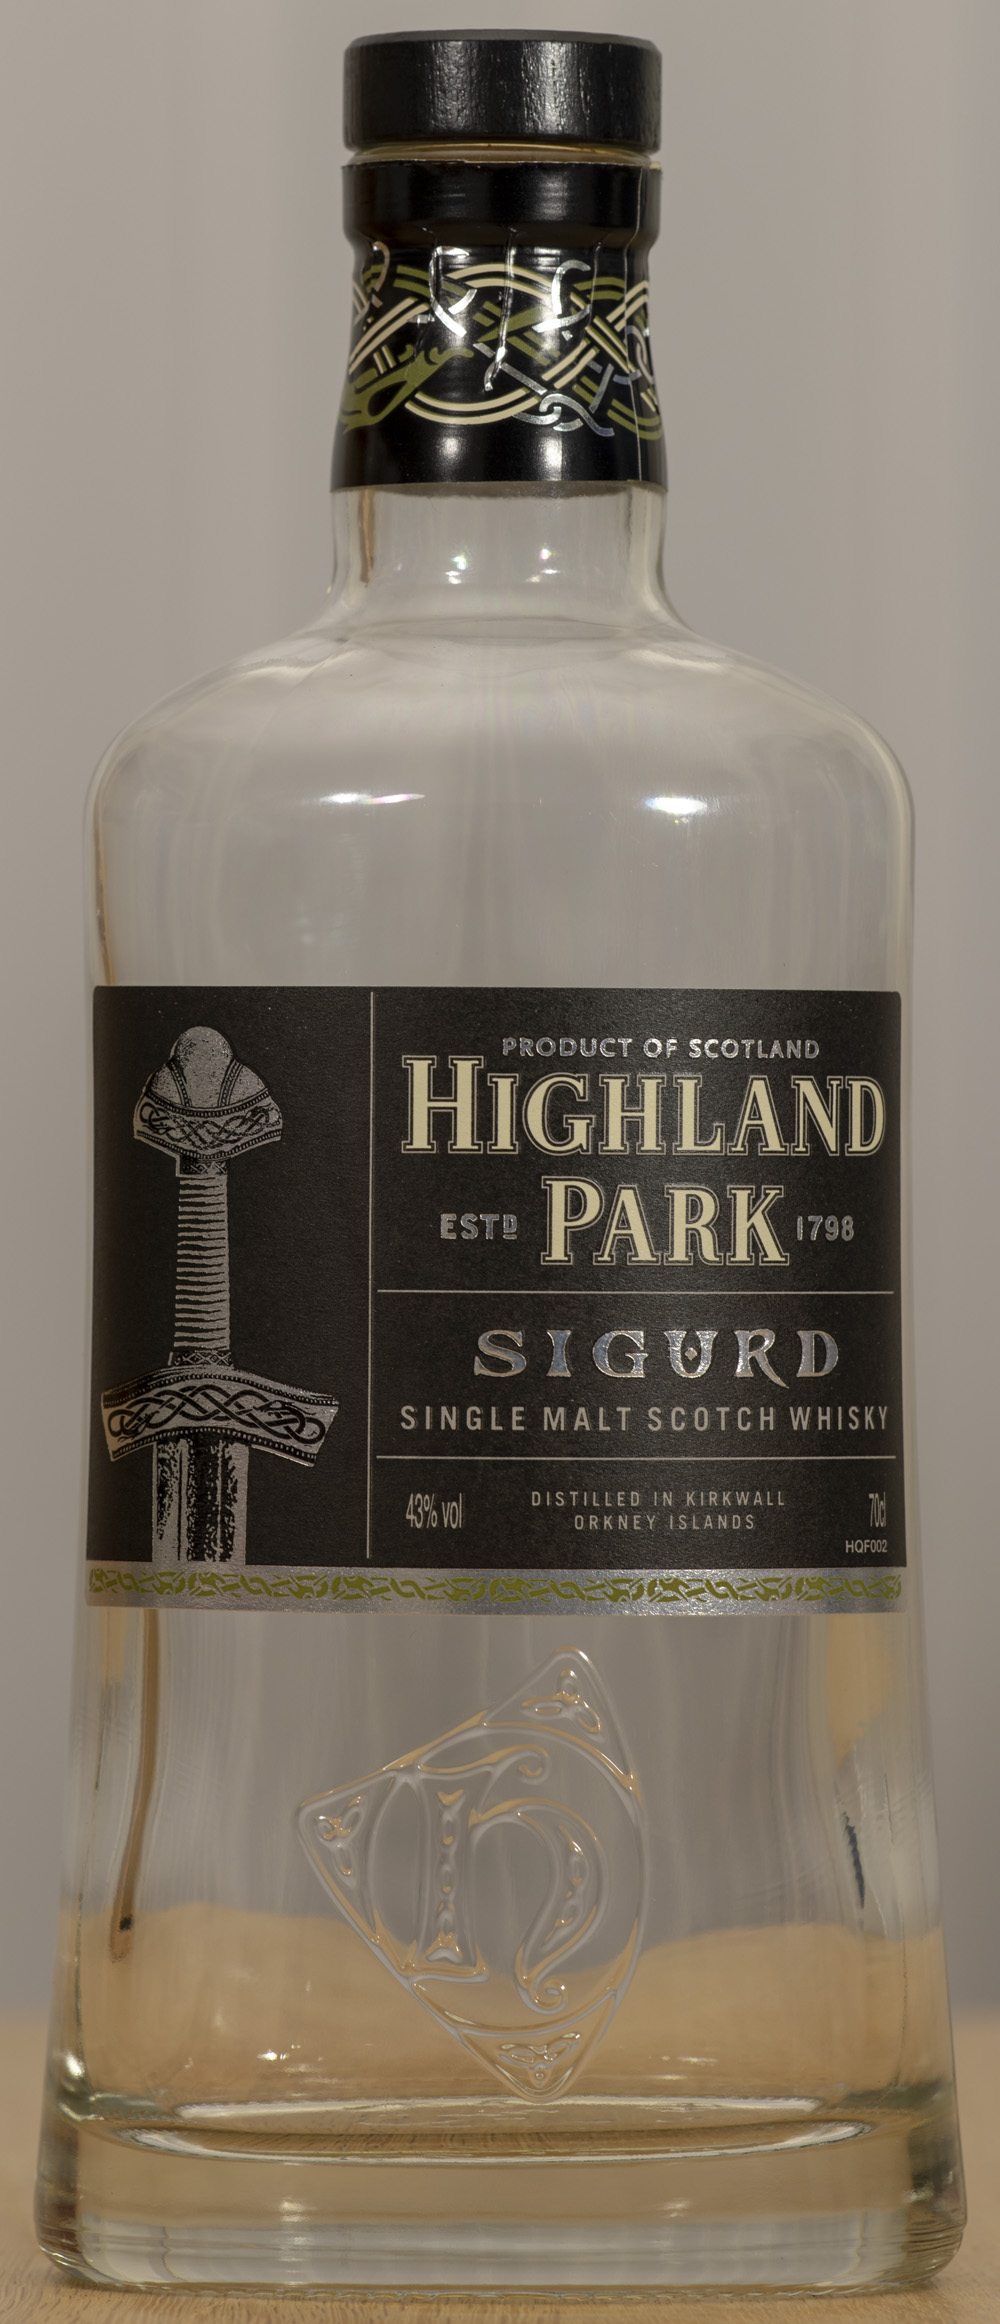 Billede: 15173 - Highland Path Sigurd - bottle front.jpg